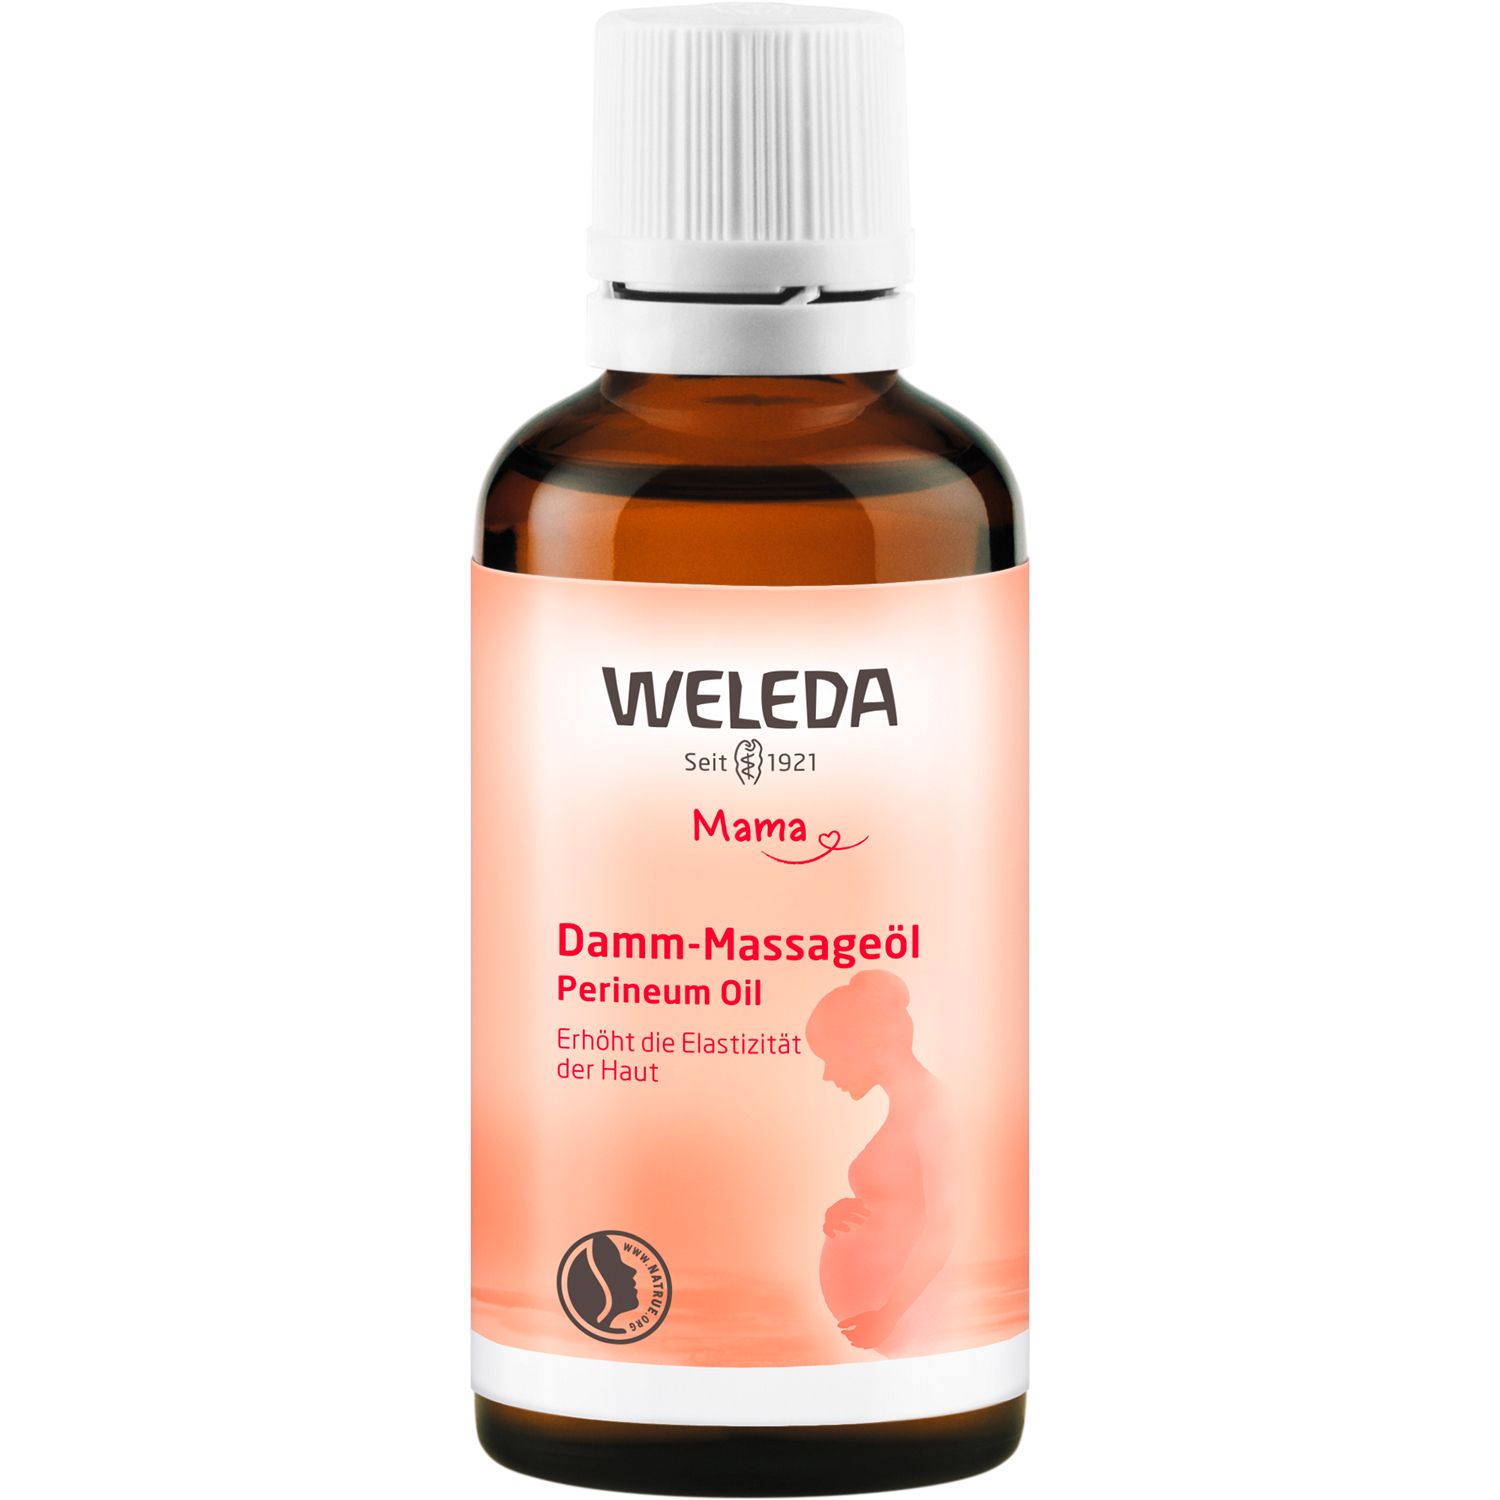 Weleda Damm-Massageöl - lockert & dehnt durch regelmäßige Massagen die Haut, für mehr Elastizität